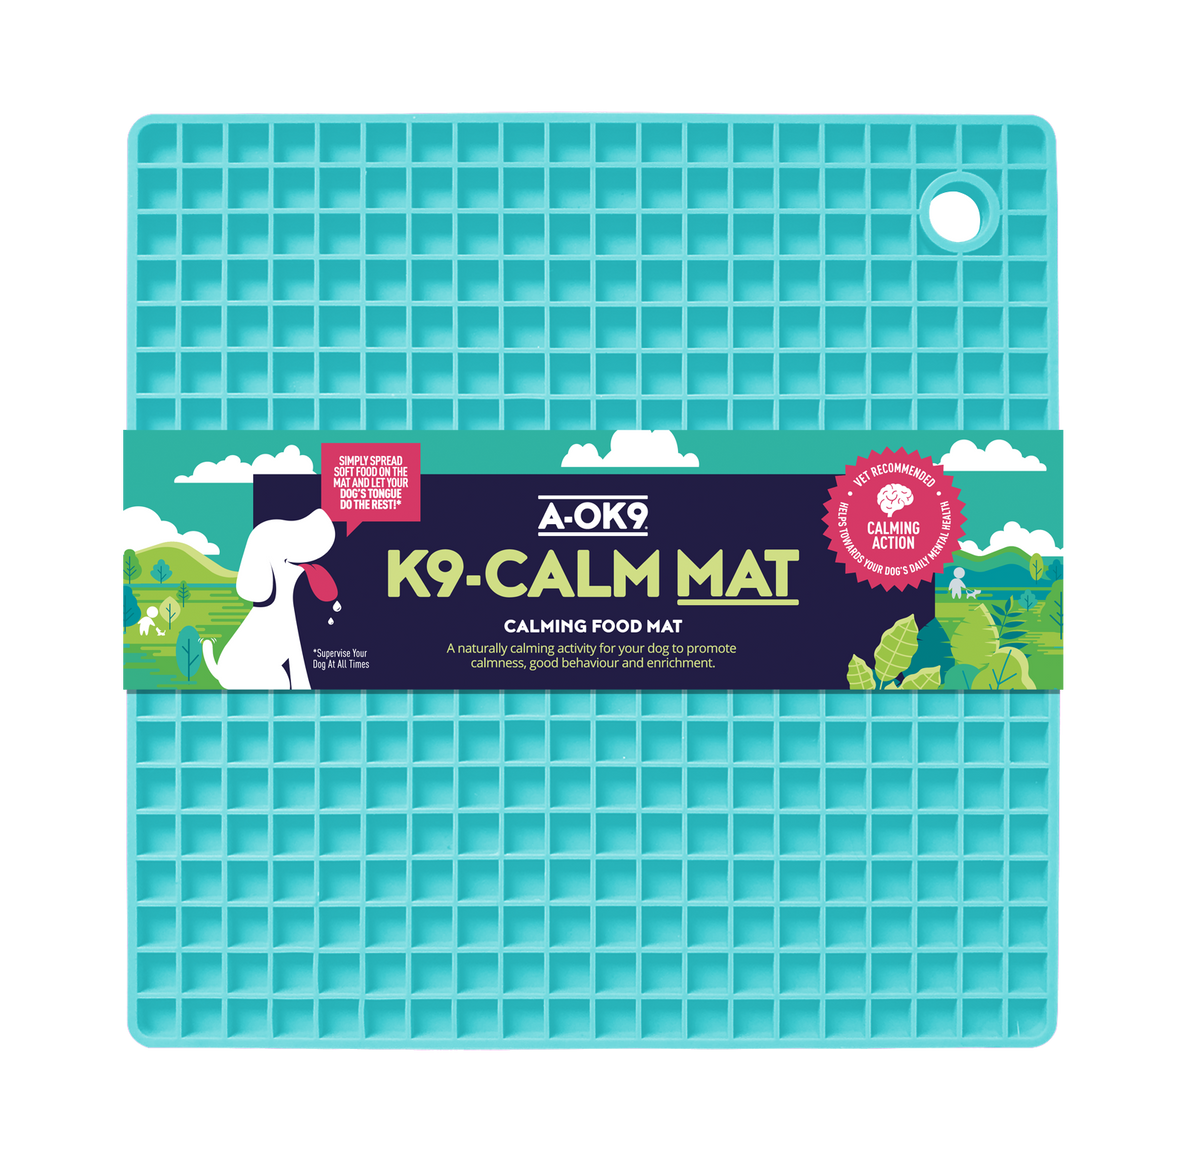 K9-CALM MAT: Lickable Enrichment Mat